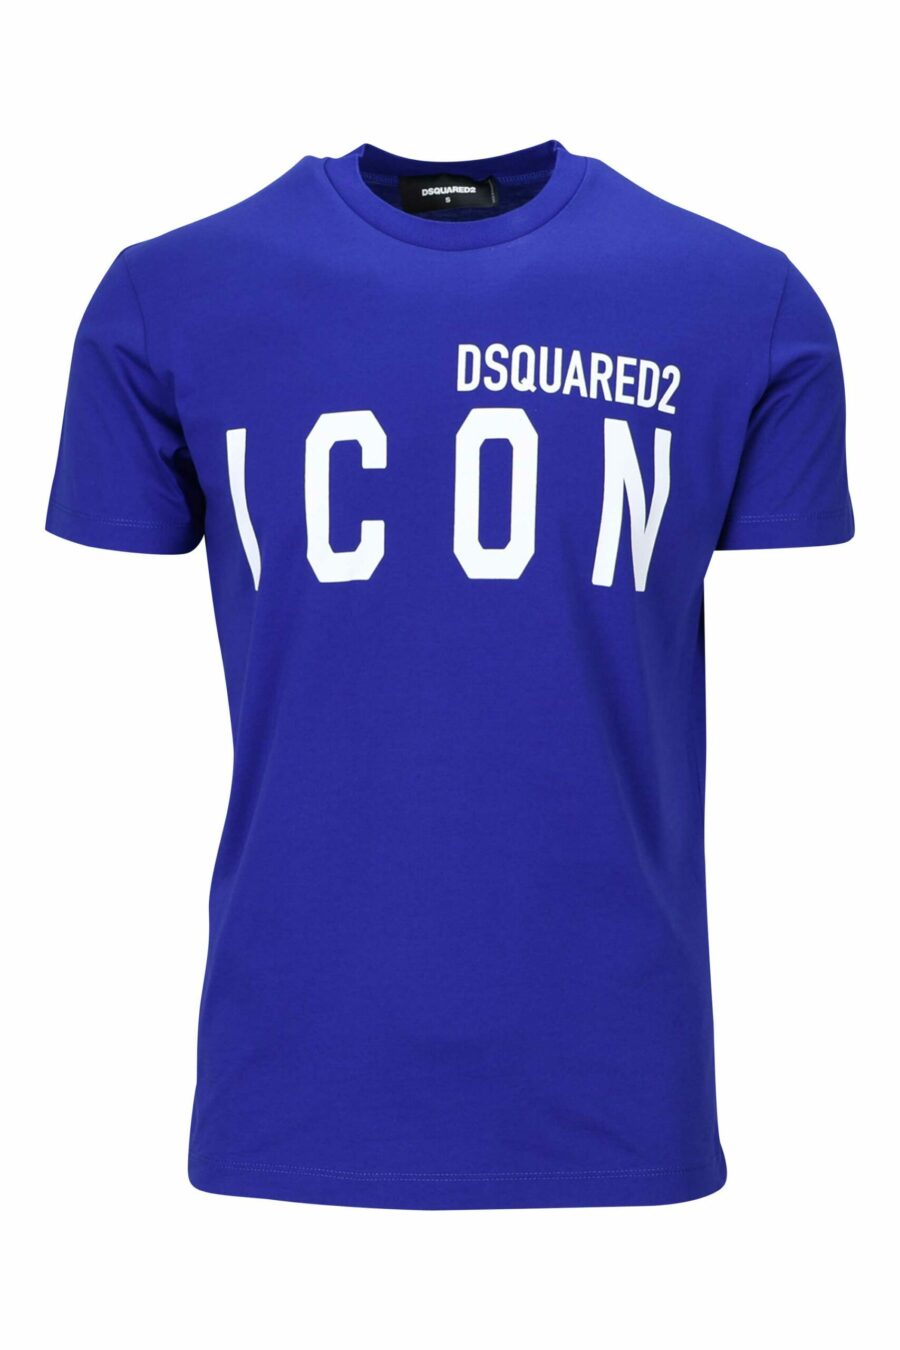 T-shirt bleu électrique avec maxilogo "icon" blanc - 8054148035525 scaled